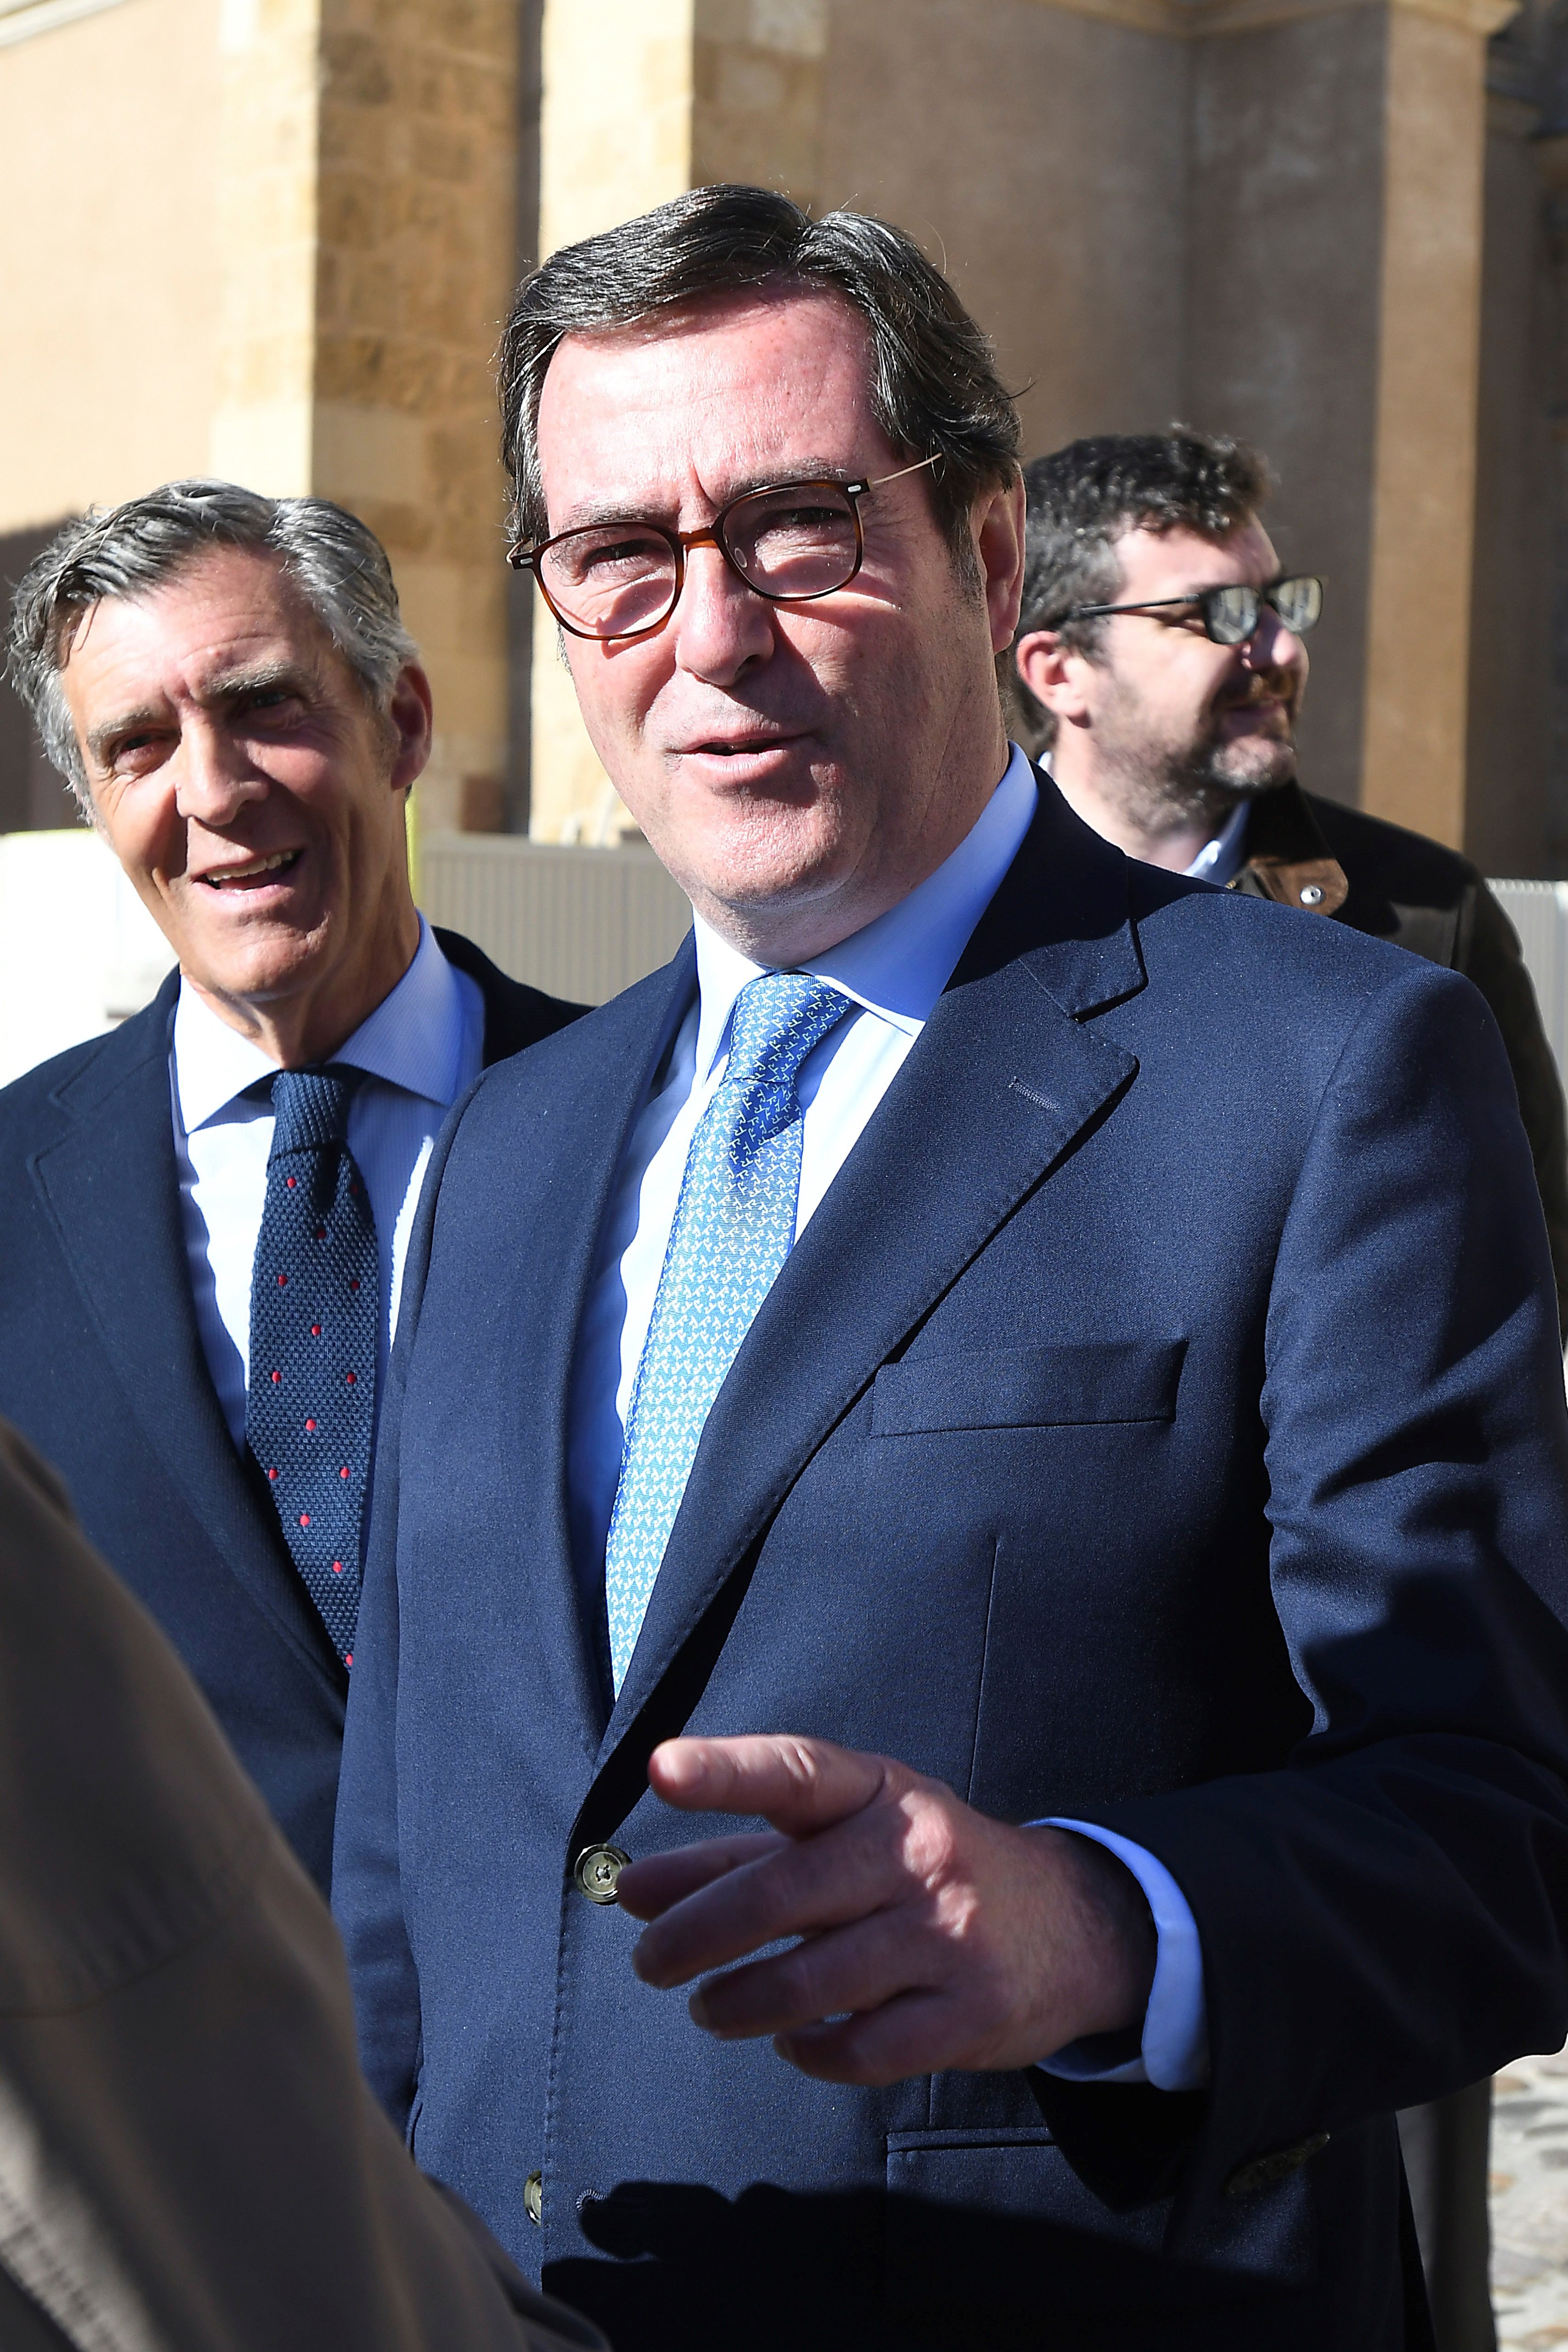 La patronal rebutja la pujada de cotitzacions proposada pel govern espanyol